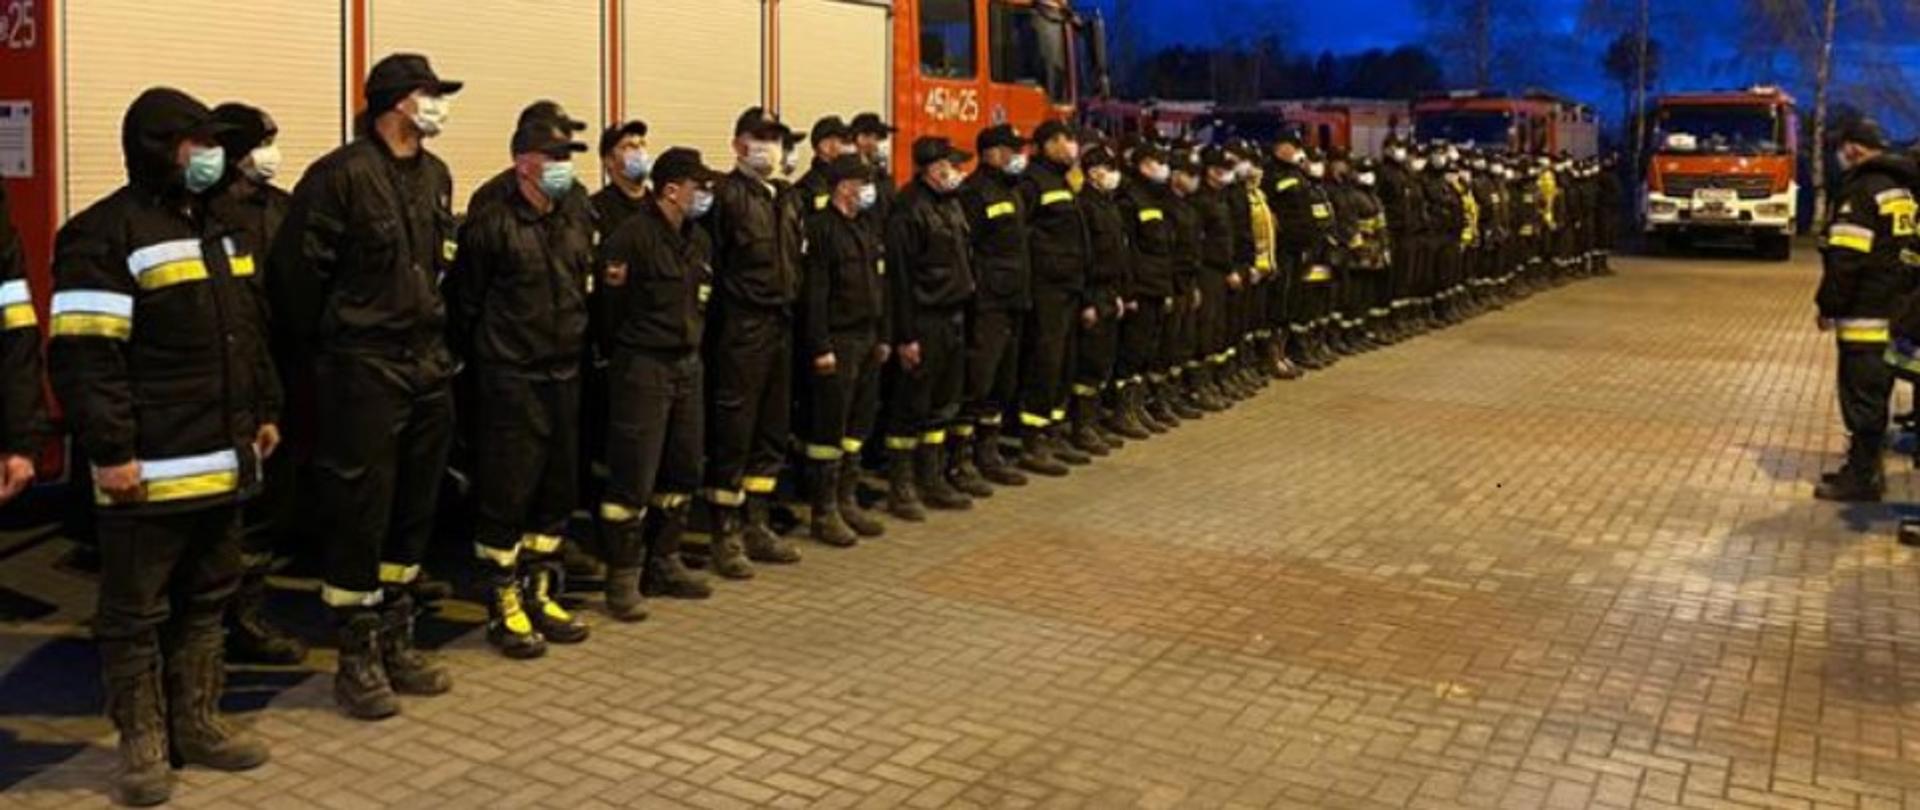 funkcjonariusze straży pożarnej stojący wieczorową porą przy wozach strażackich